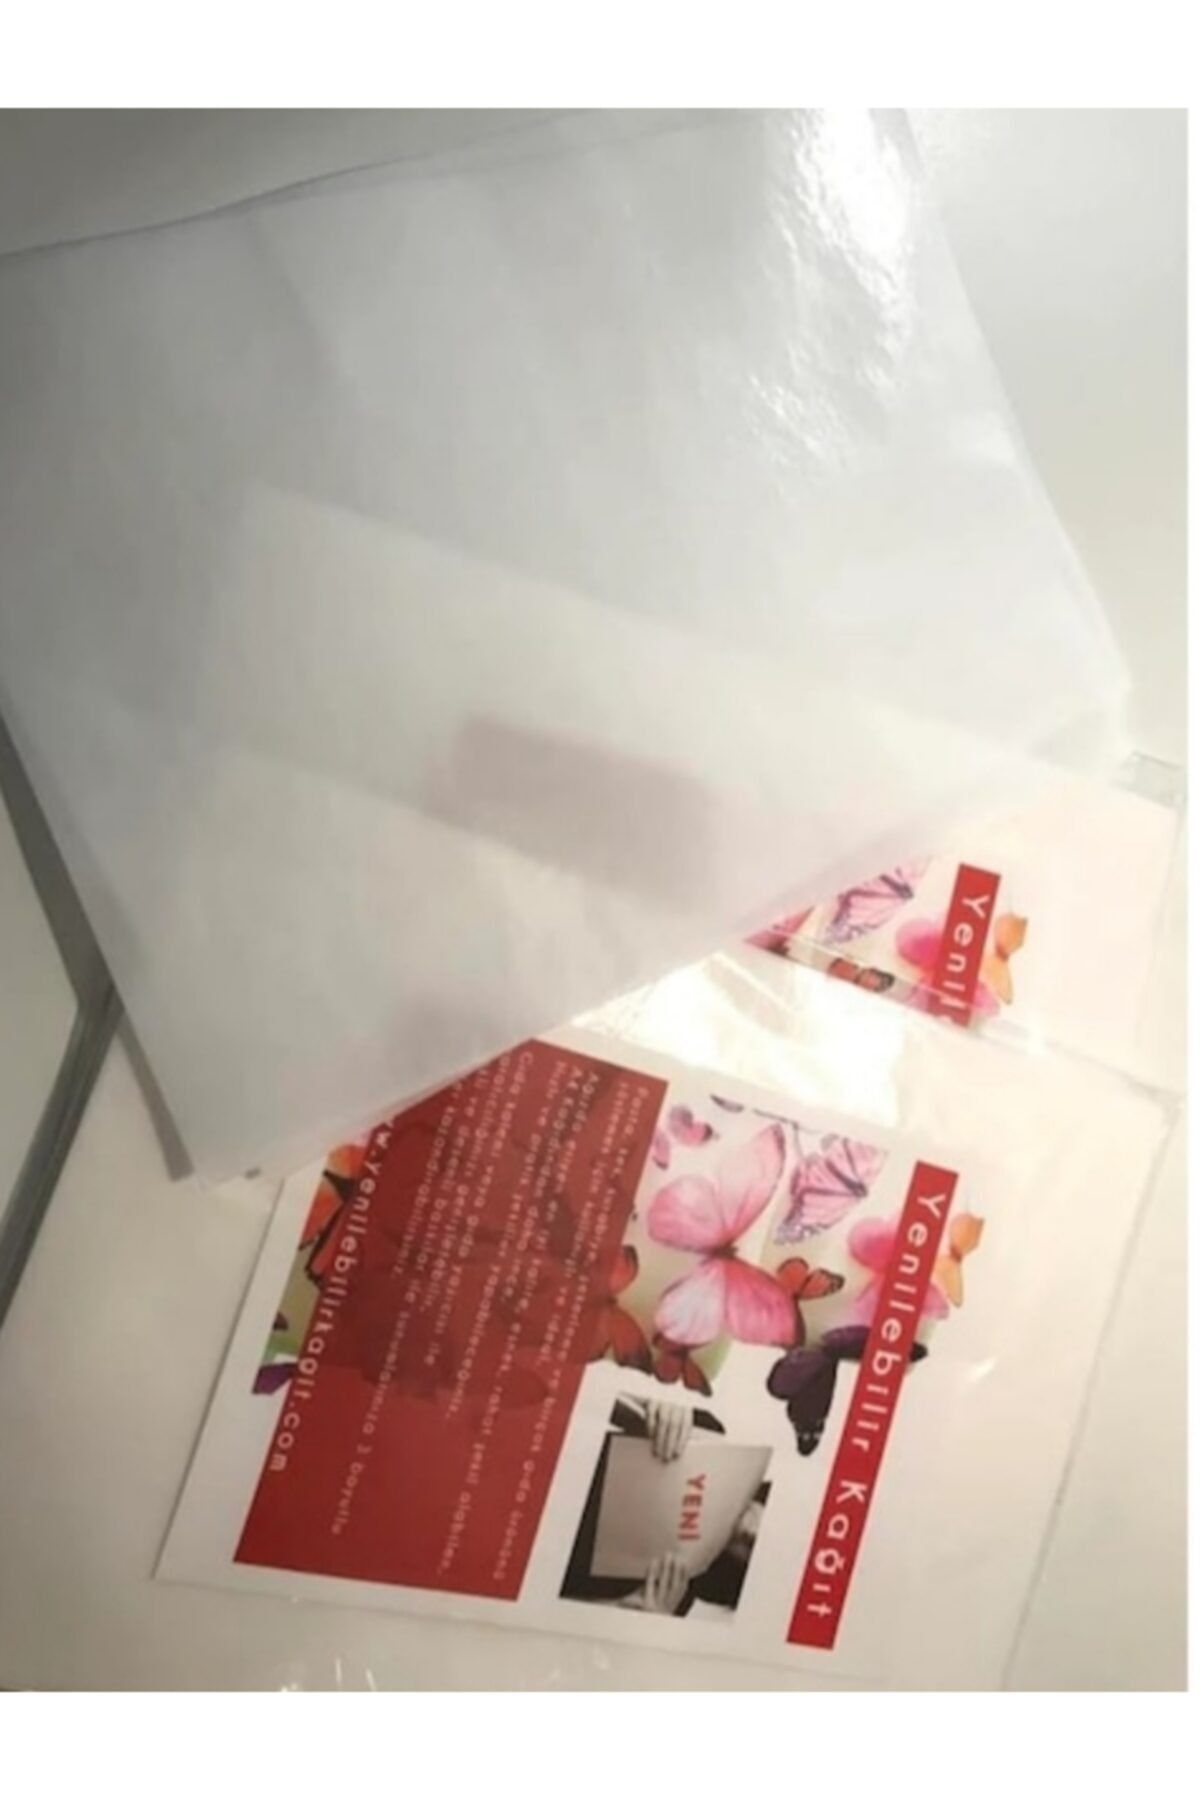 SEVVOM Boutique Yenilebilir Pasta Baskı Kağıdı 10 Lu Paket Düz Beyaz Yanan Pasta Kağıdı